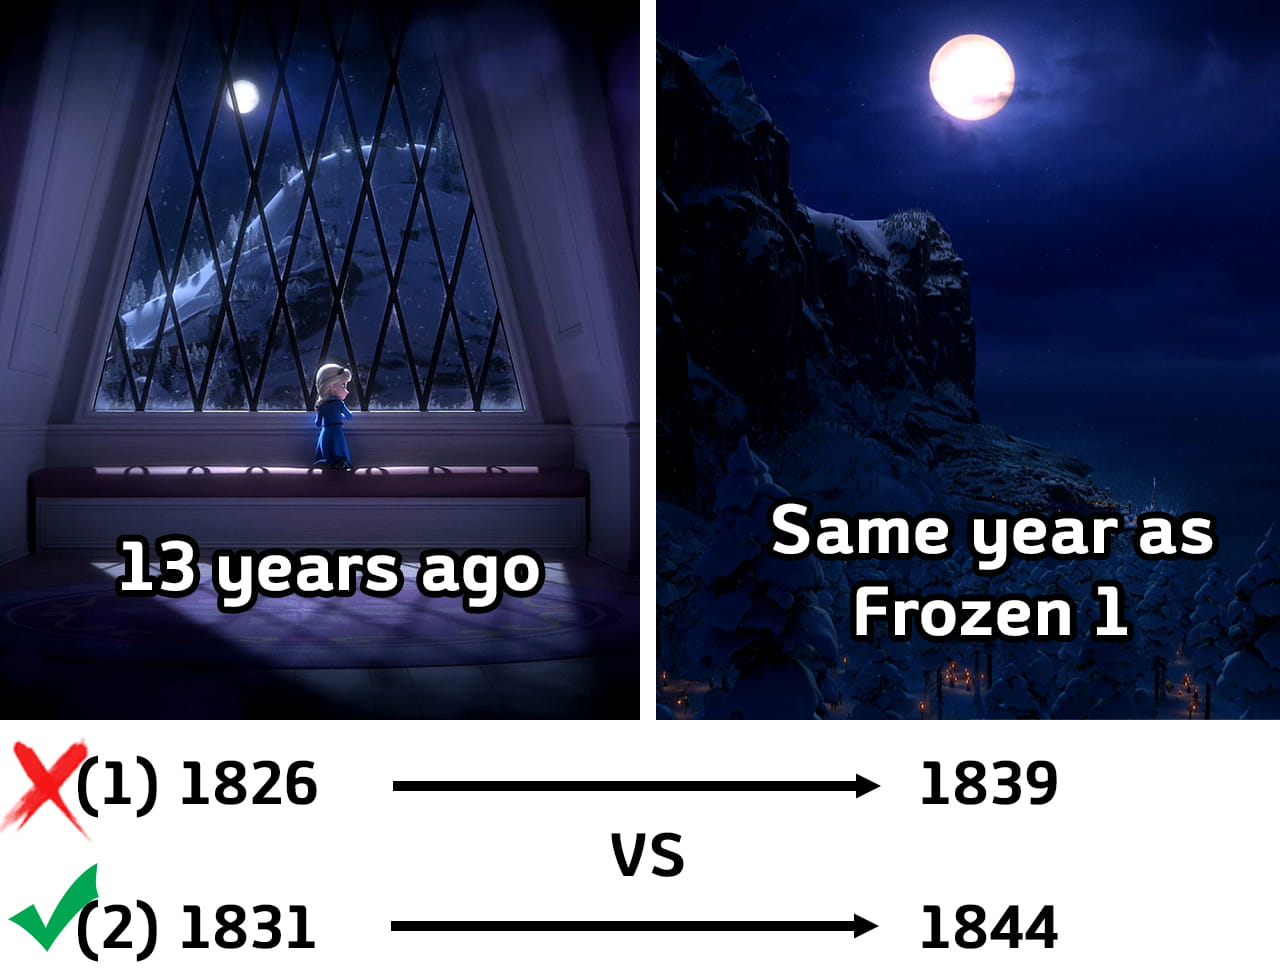 1844 as true Frozen 1